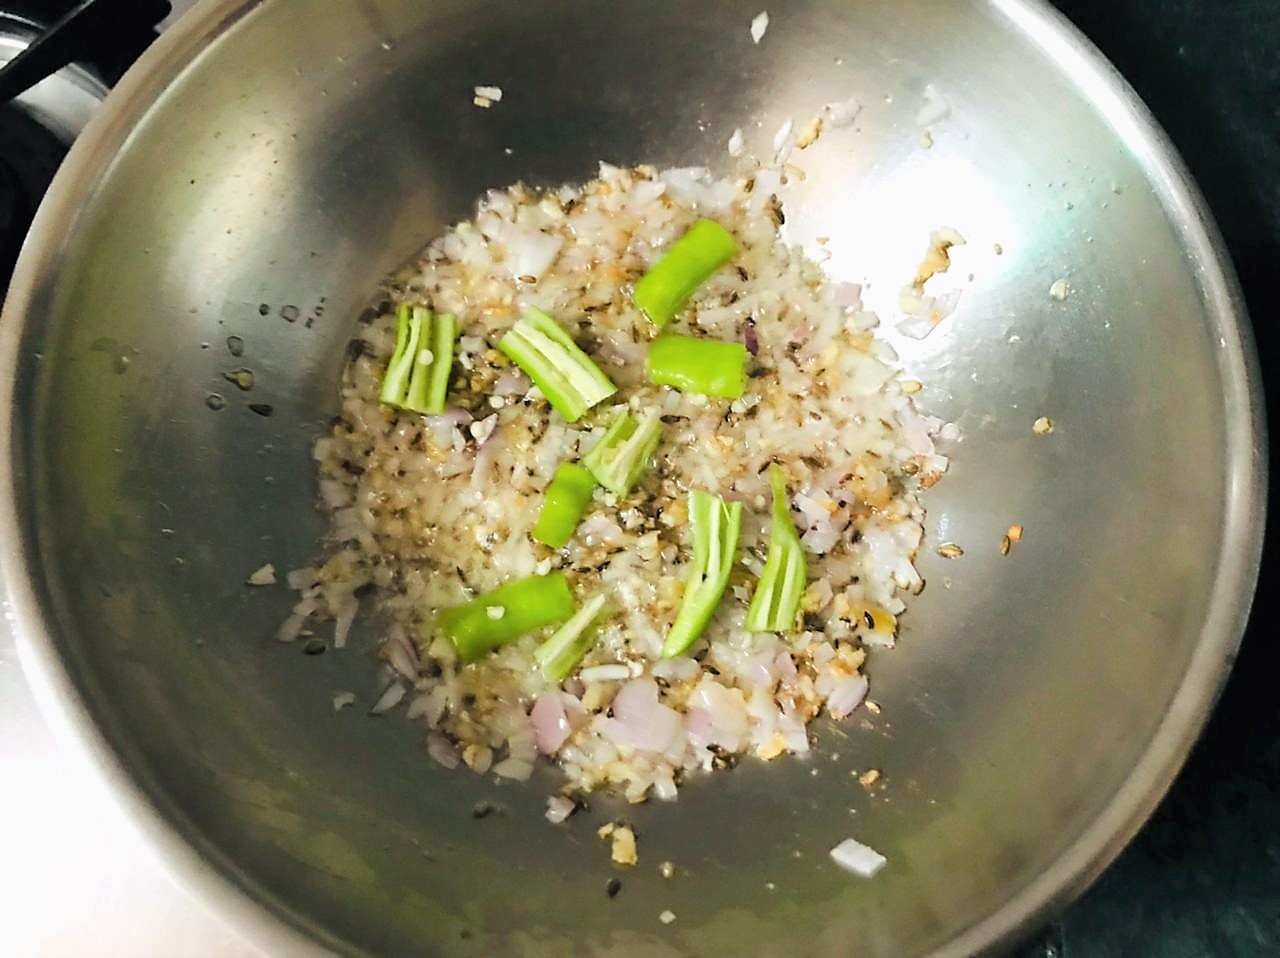 Bhindi Do Pyaza Recipe